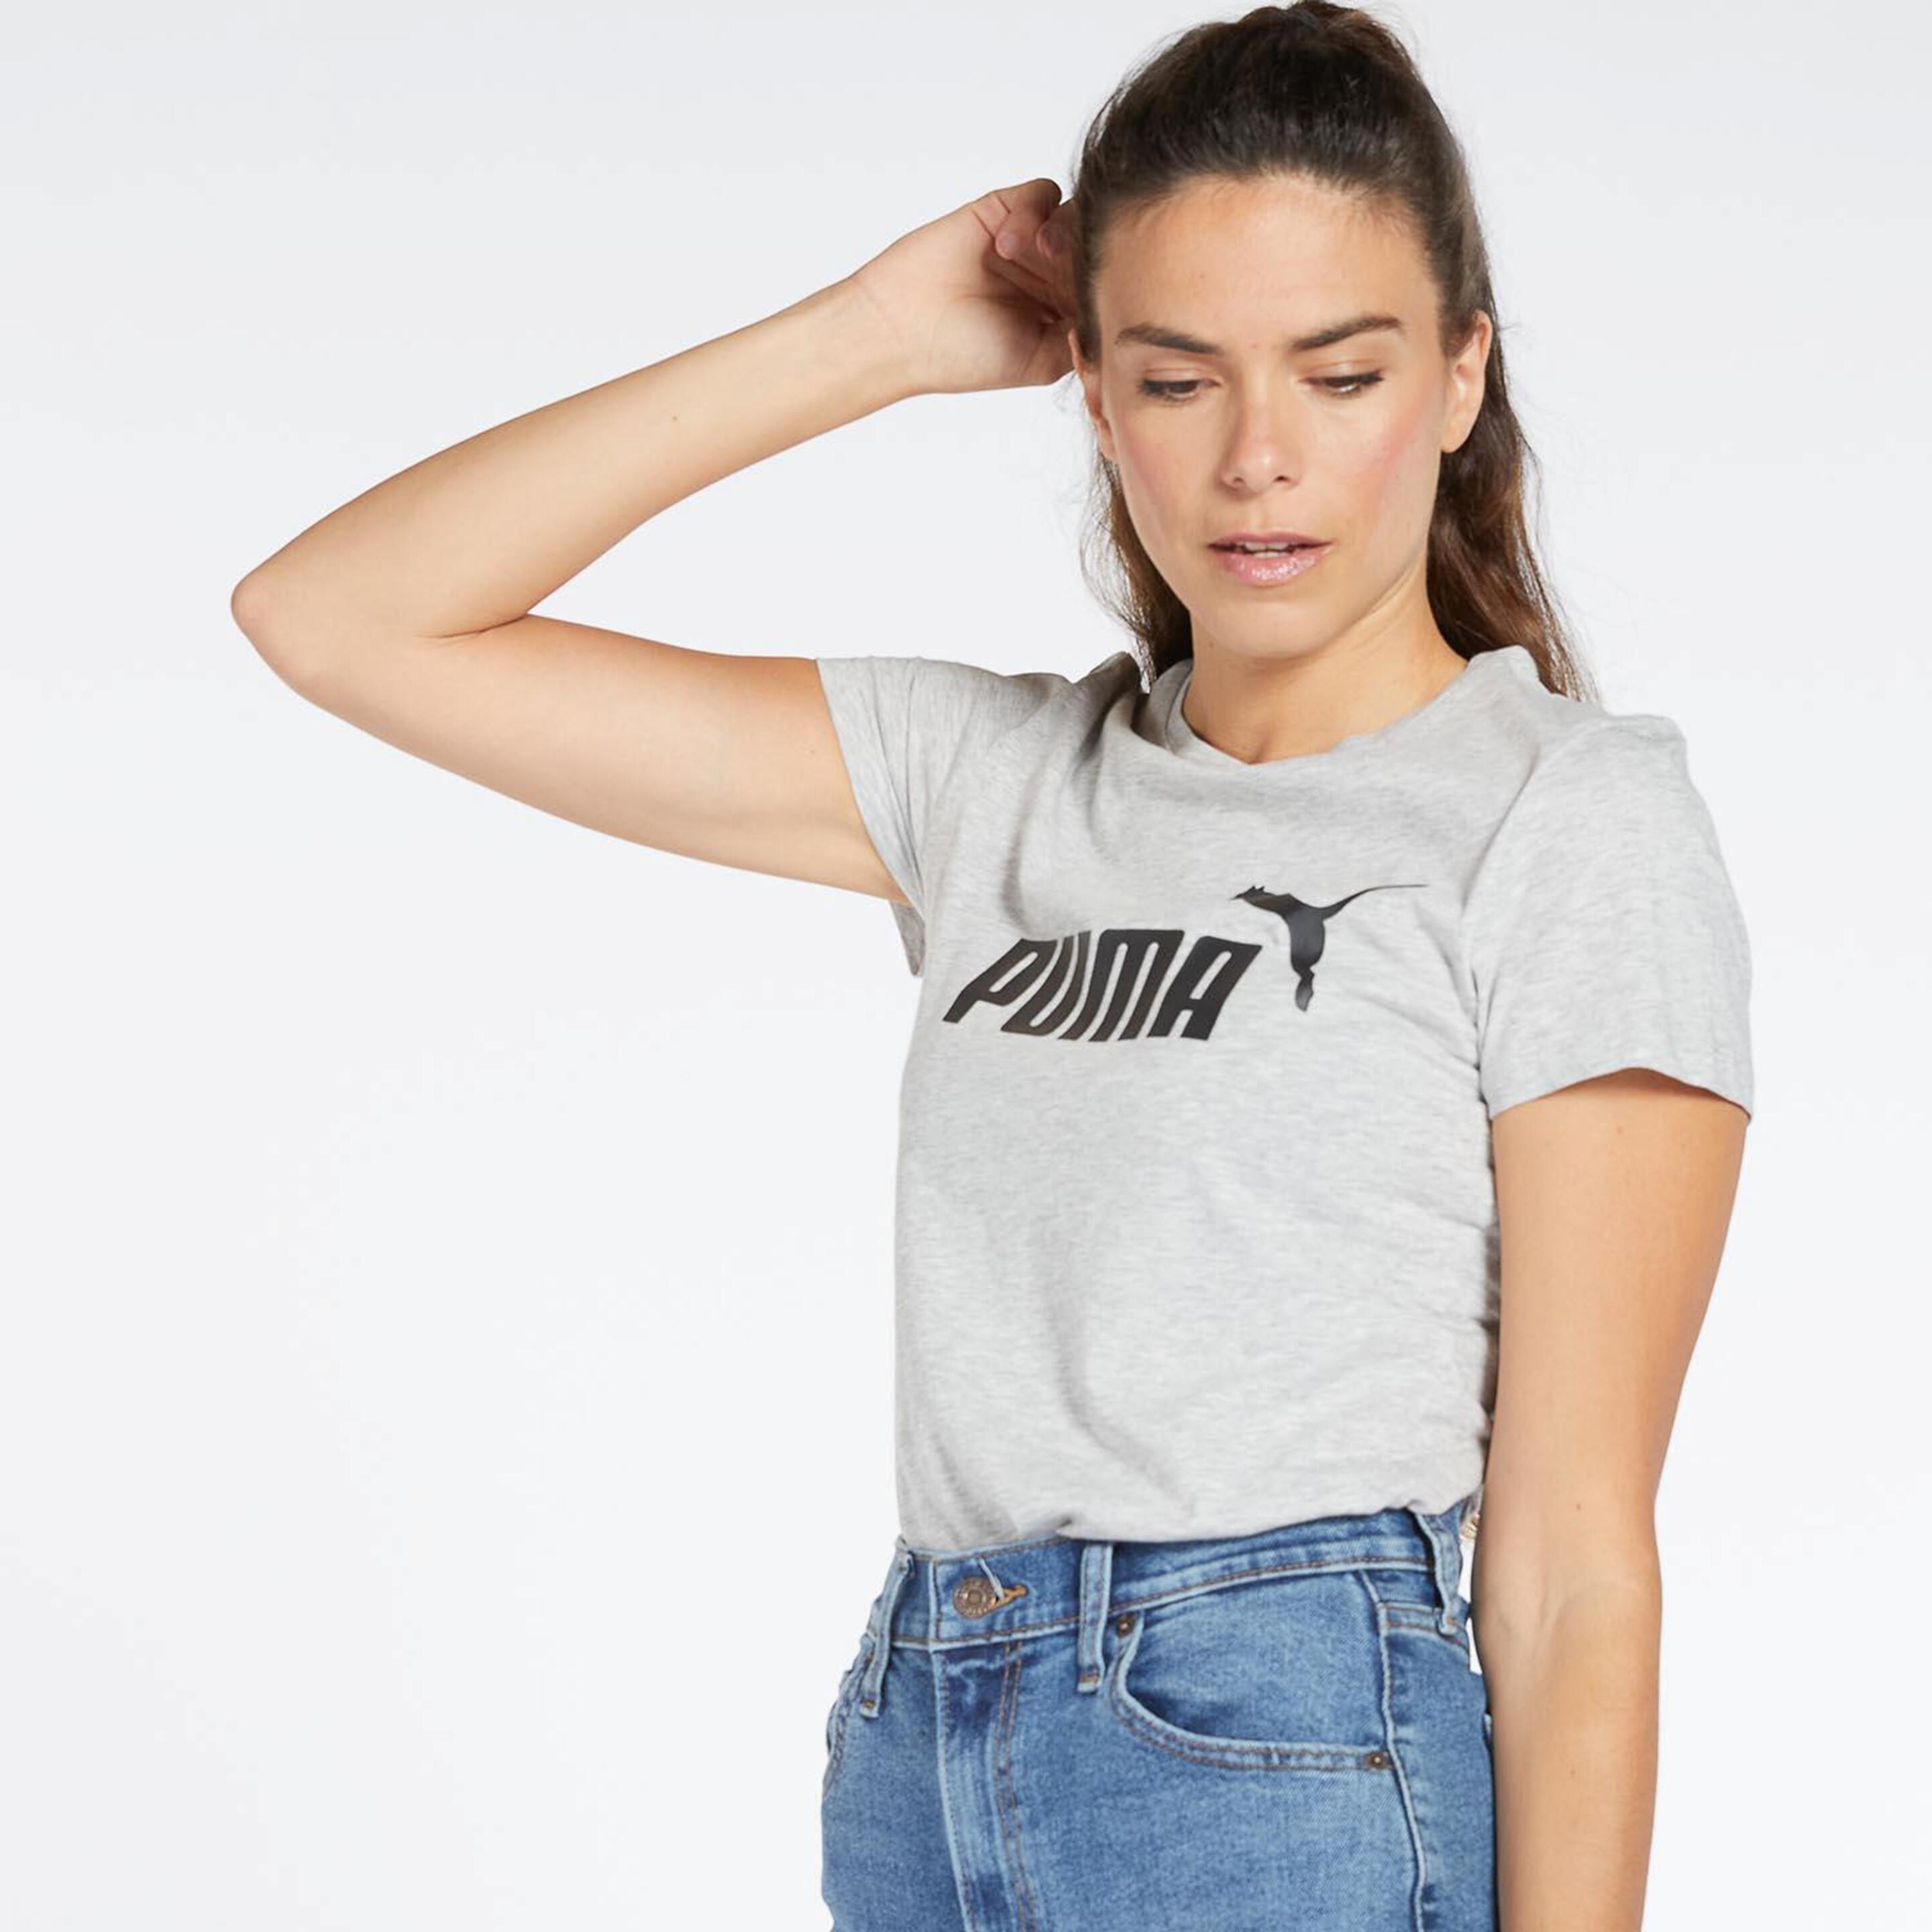 Puma Essentials - Gris - Camiseta Mujer